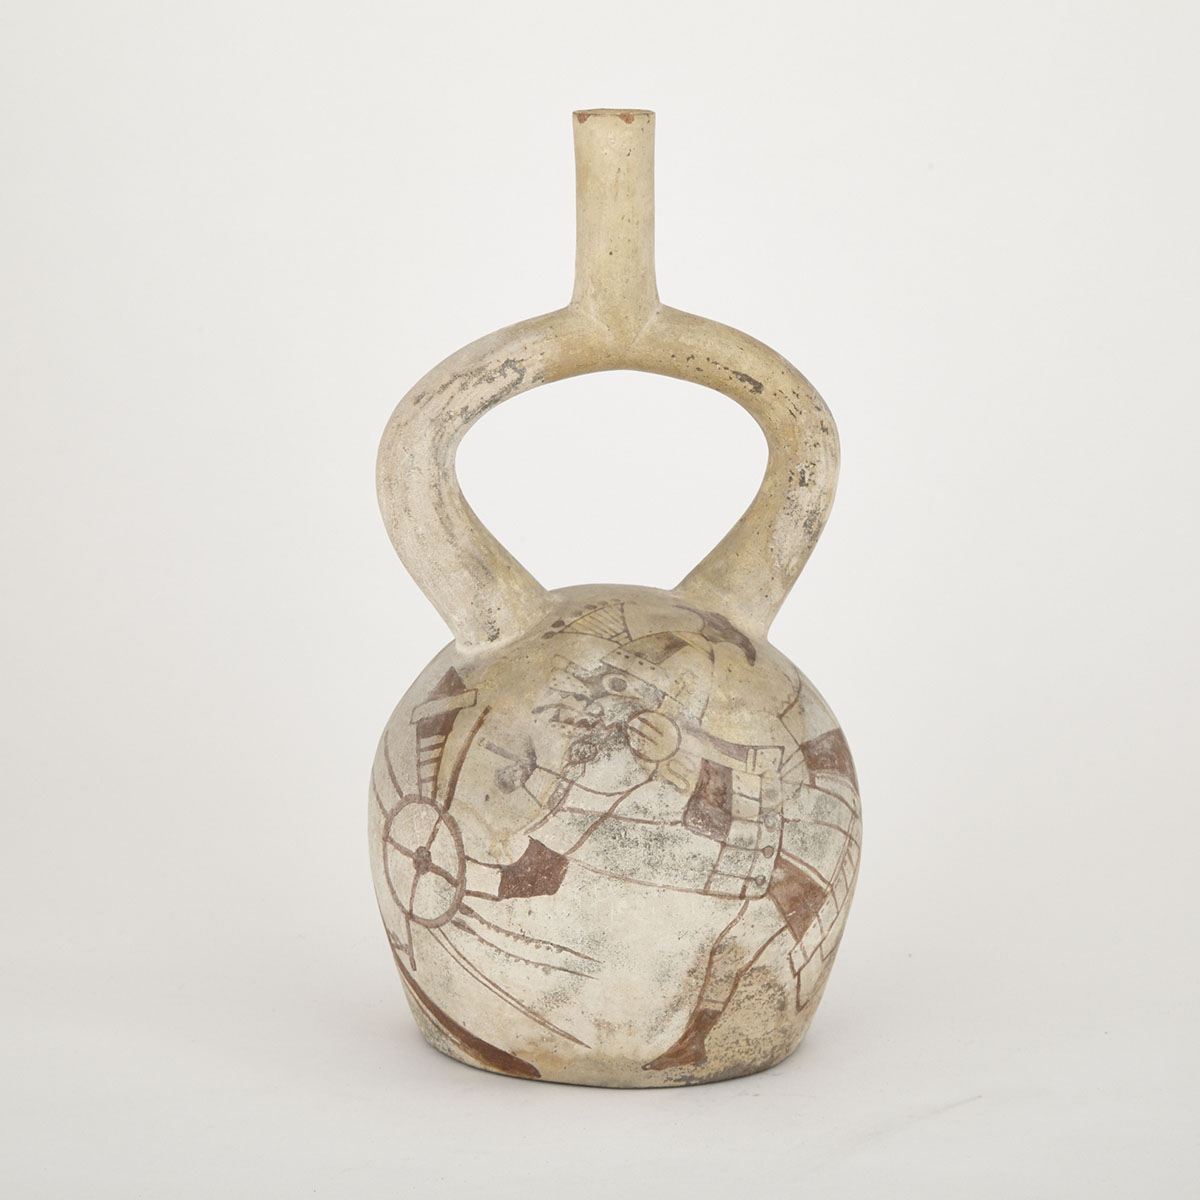 Middle Mochica Pottery Stirrup Spout Vessel, Peru, 400-600 A.D.